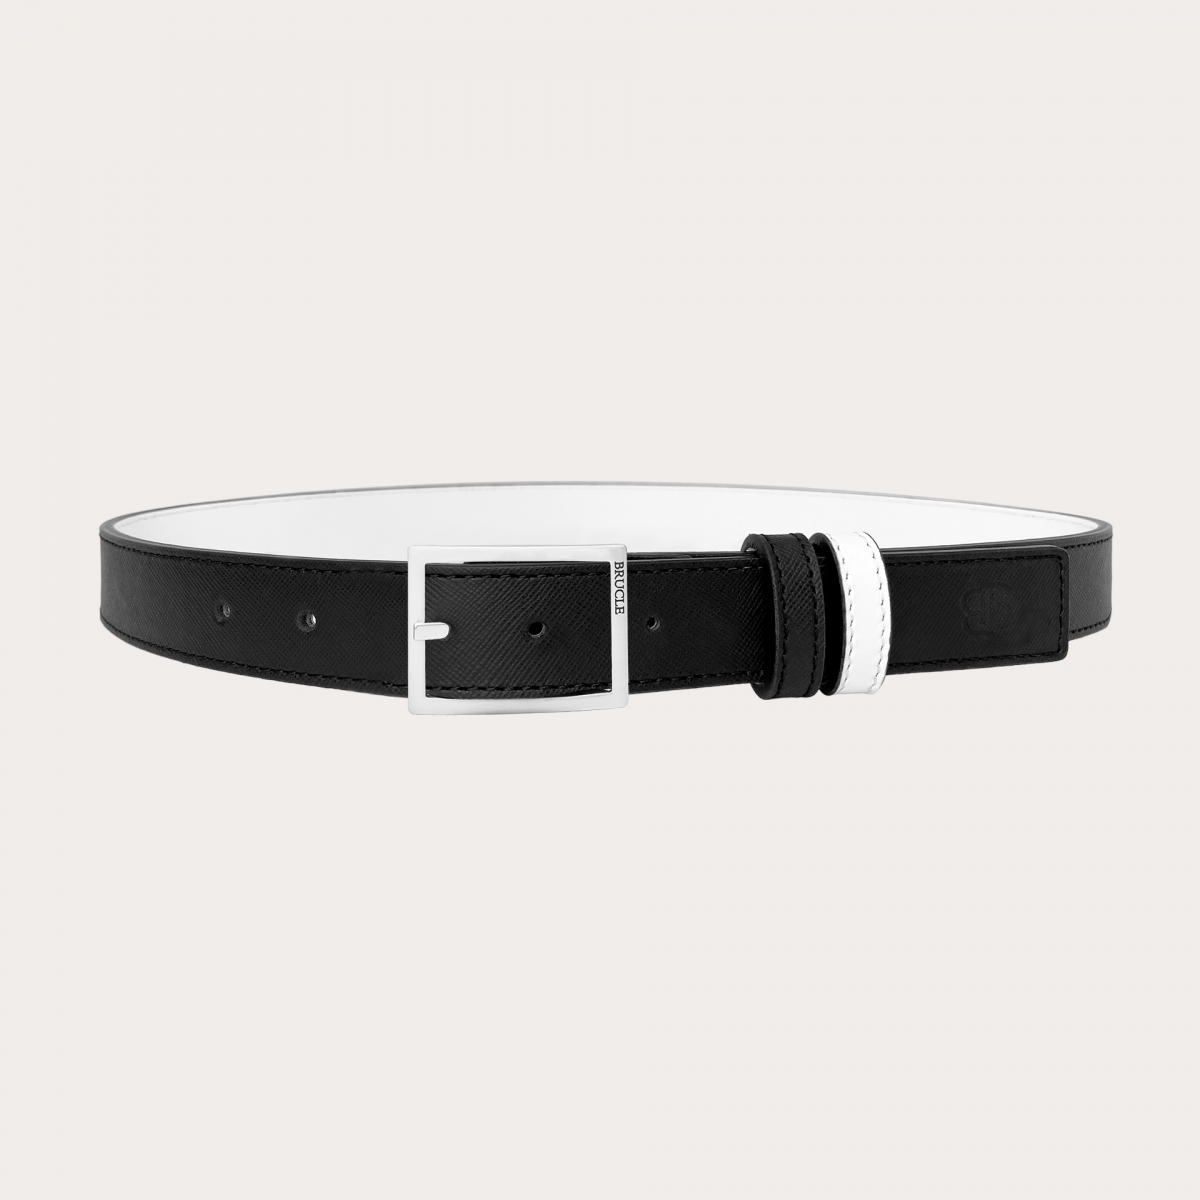 Cinturón reversible en Saffiano negro y piel blanca